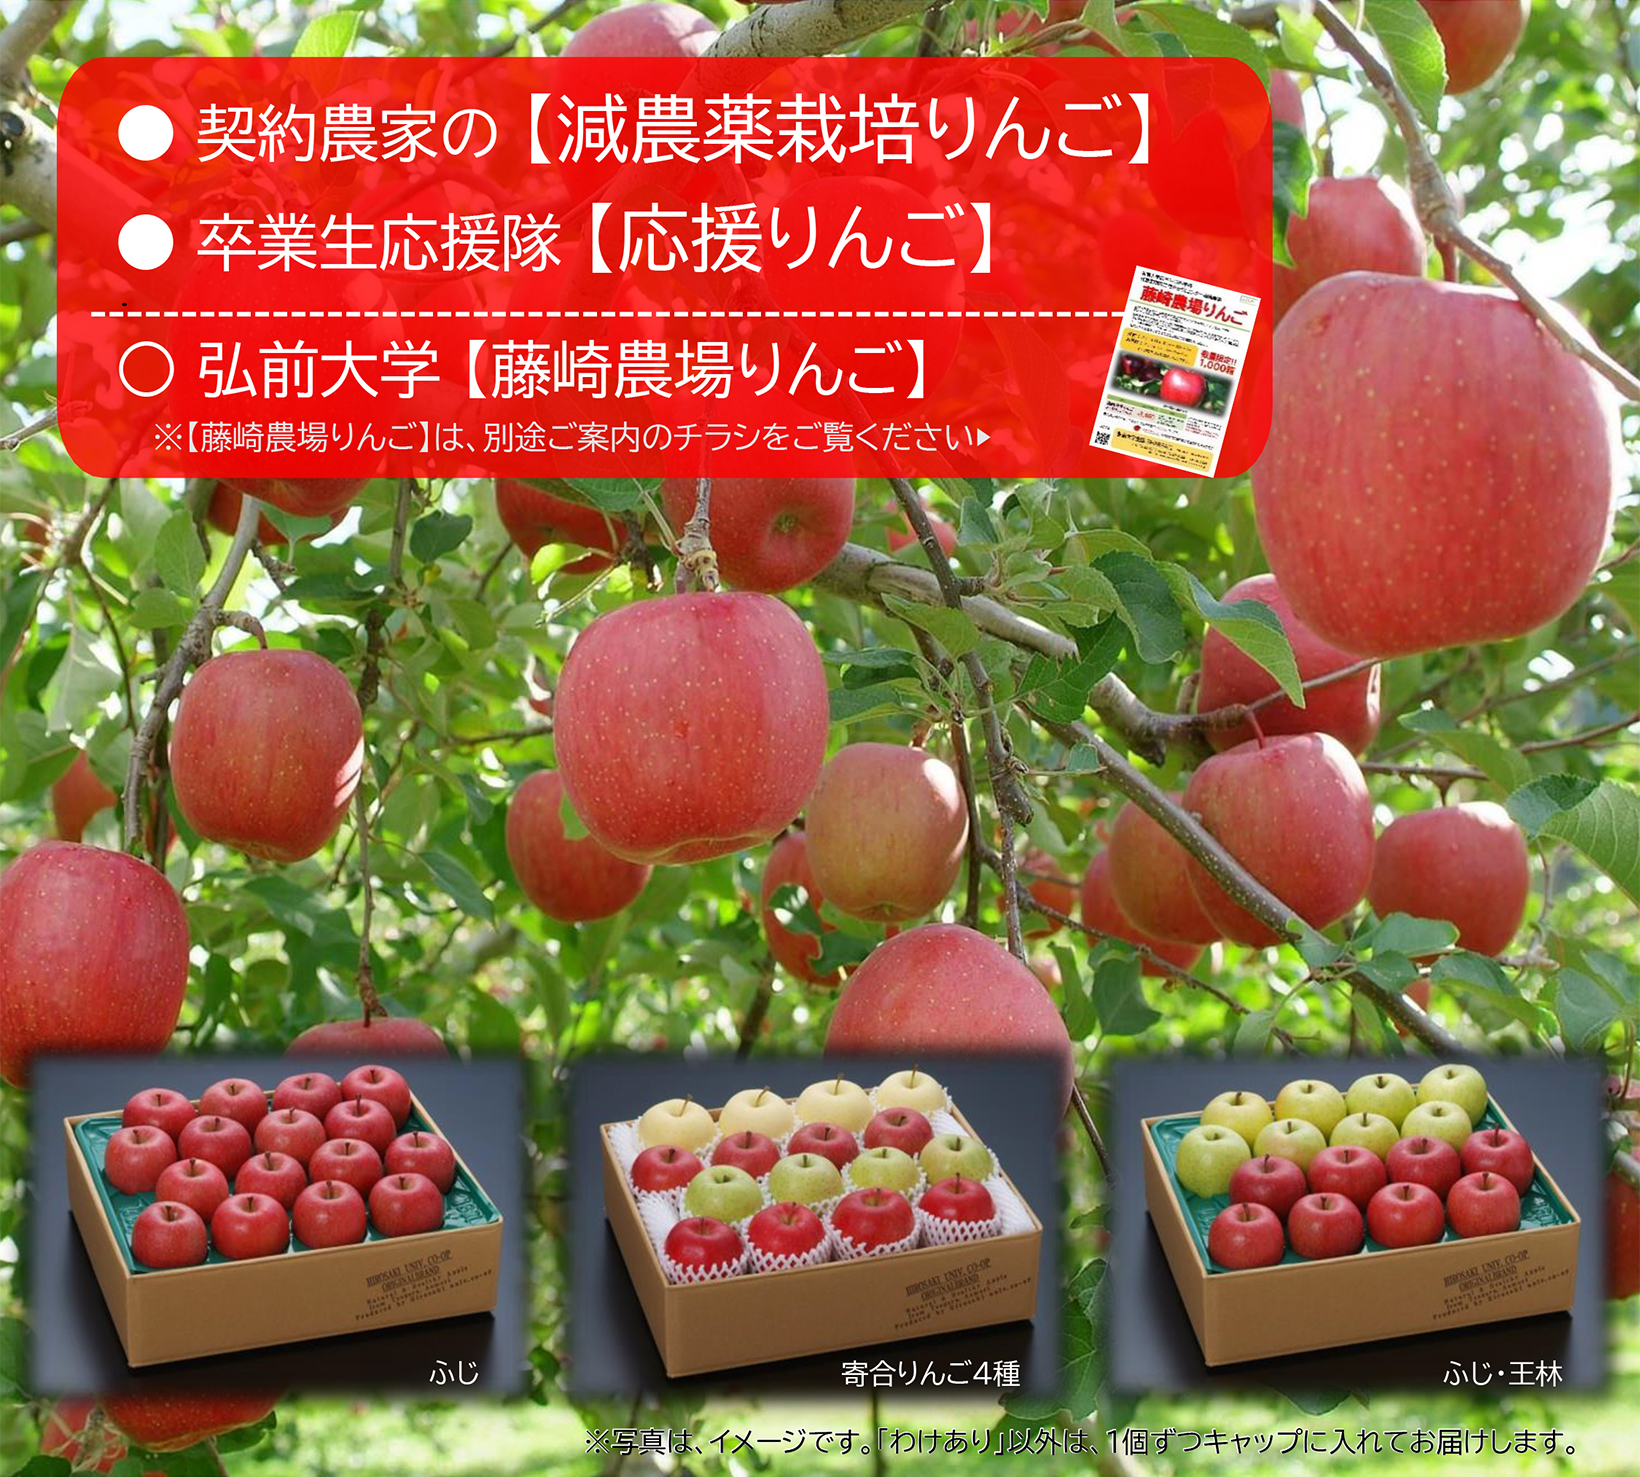 りんごの全国発送 弘前大学生協